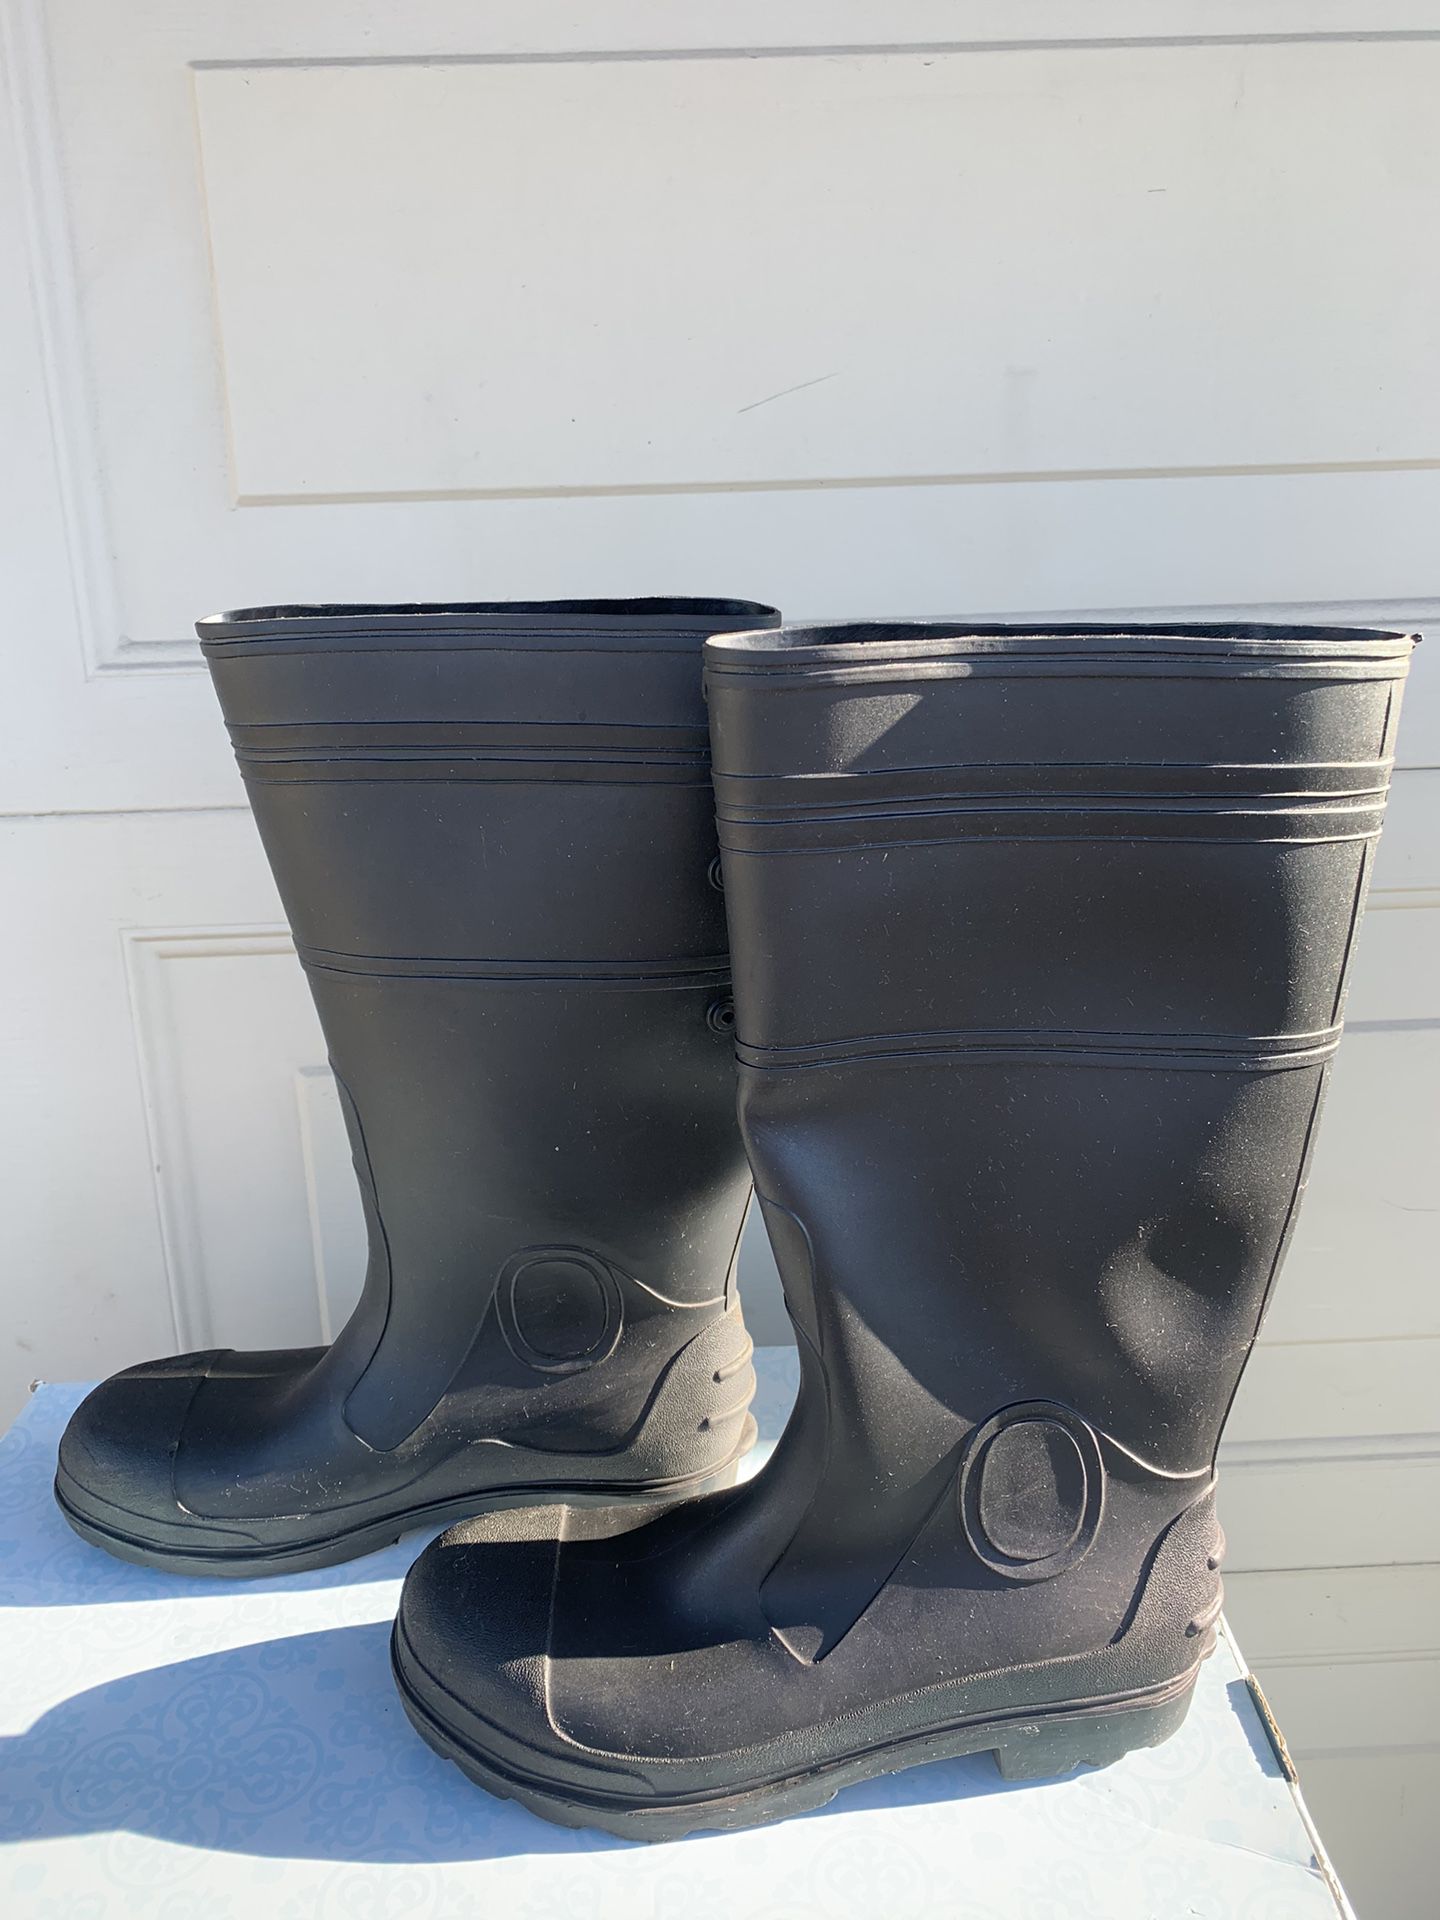 Black Rubber Rain Boots Size 8